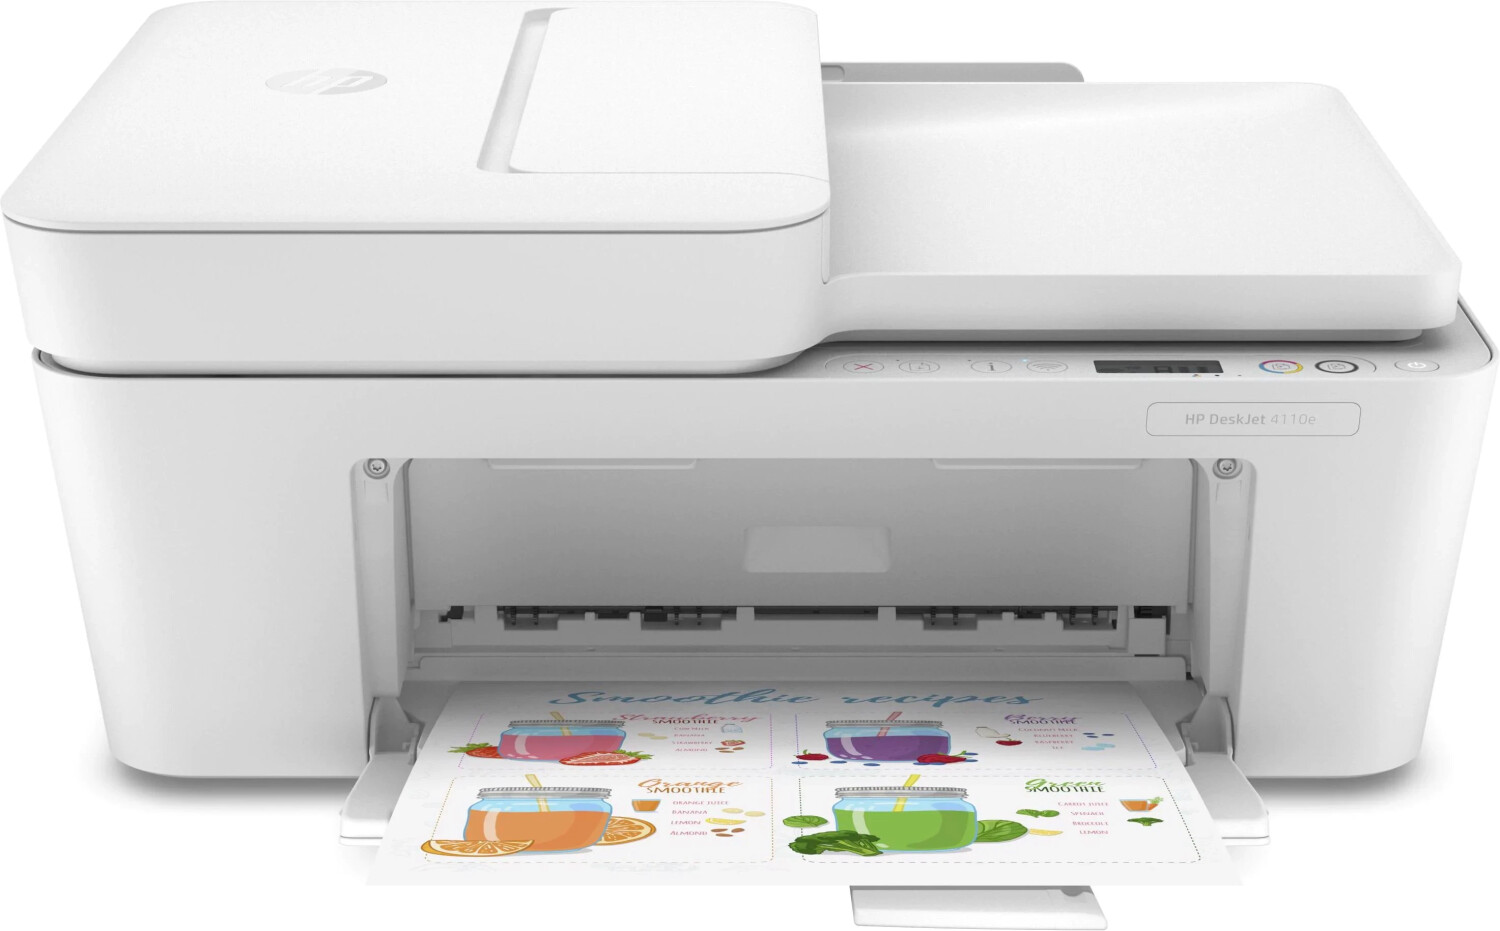 Image of HP DeskJet Plus Stampante multifunzione HP DeskJet 4110e, Colore, Stampante per Casa, Stampa, copia, scansione, invio fax da mobile, HP+; Idoneo per HP Instant Ink; scansione verso PDF